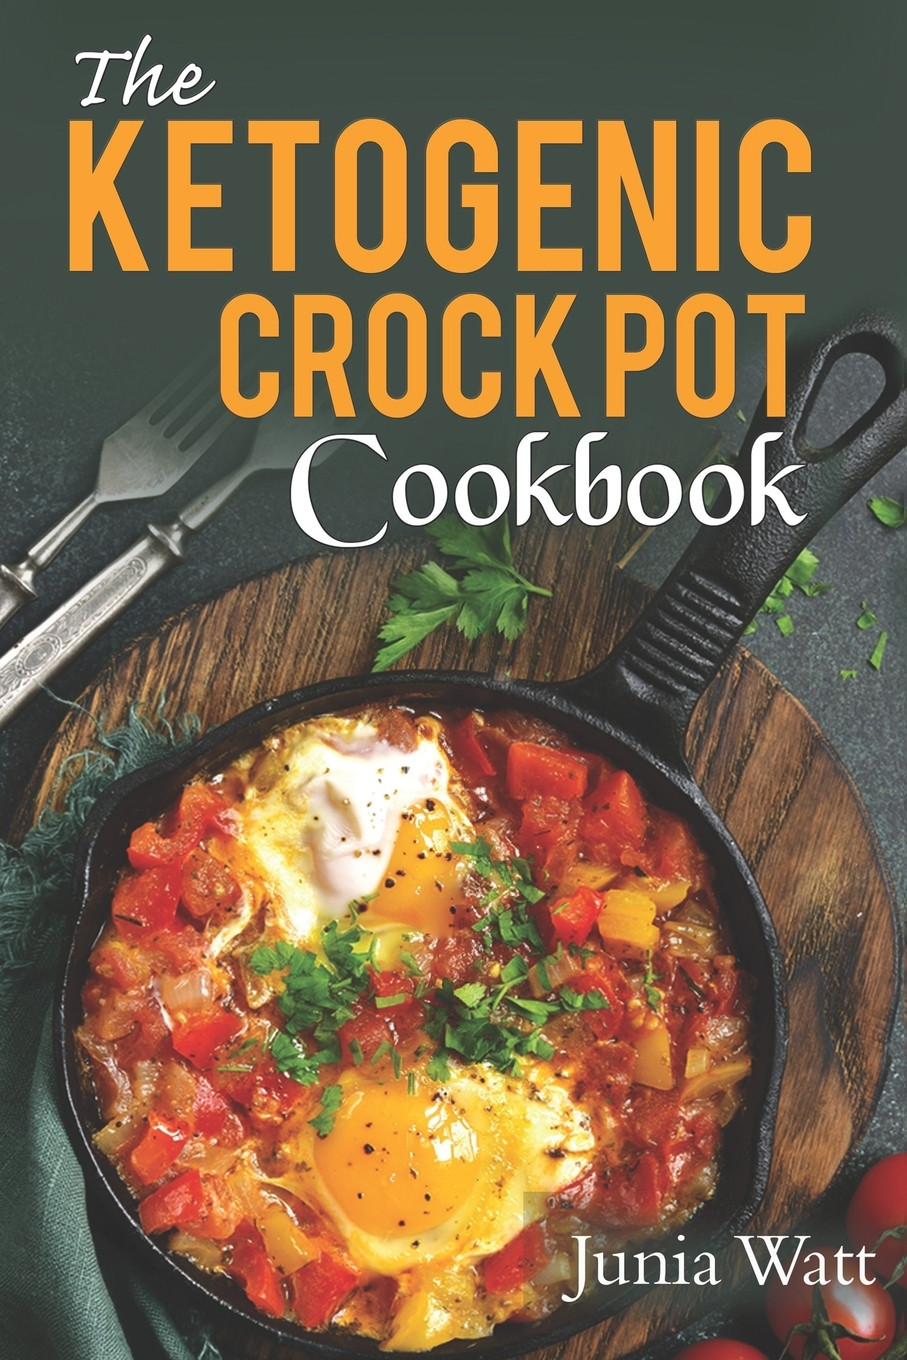 Keto Diet Recipes Easy Crock Pot
 Ketogenic Crock Pot Cookbook 50 Easy & Healthy Low Carb